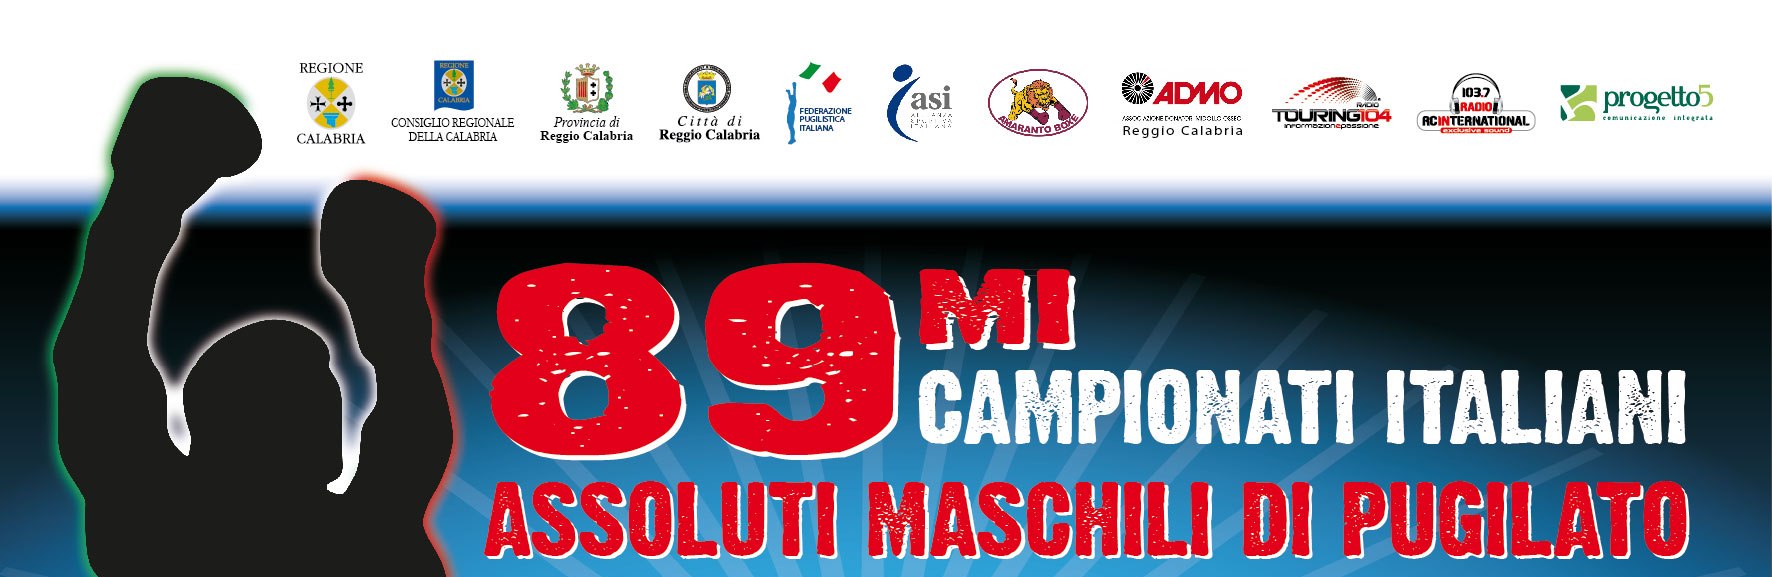 CAMPIONATI ITALIANI ASSOLUTI 2011 - RISULTATI